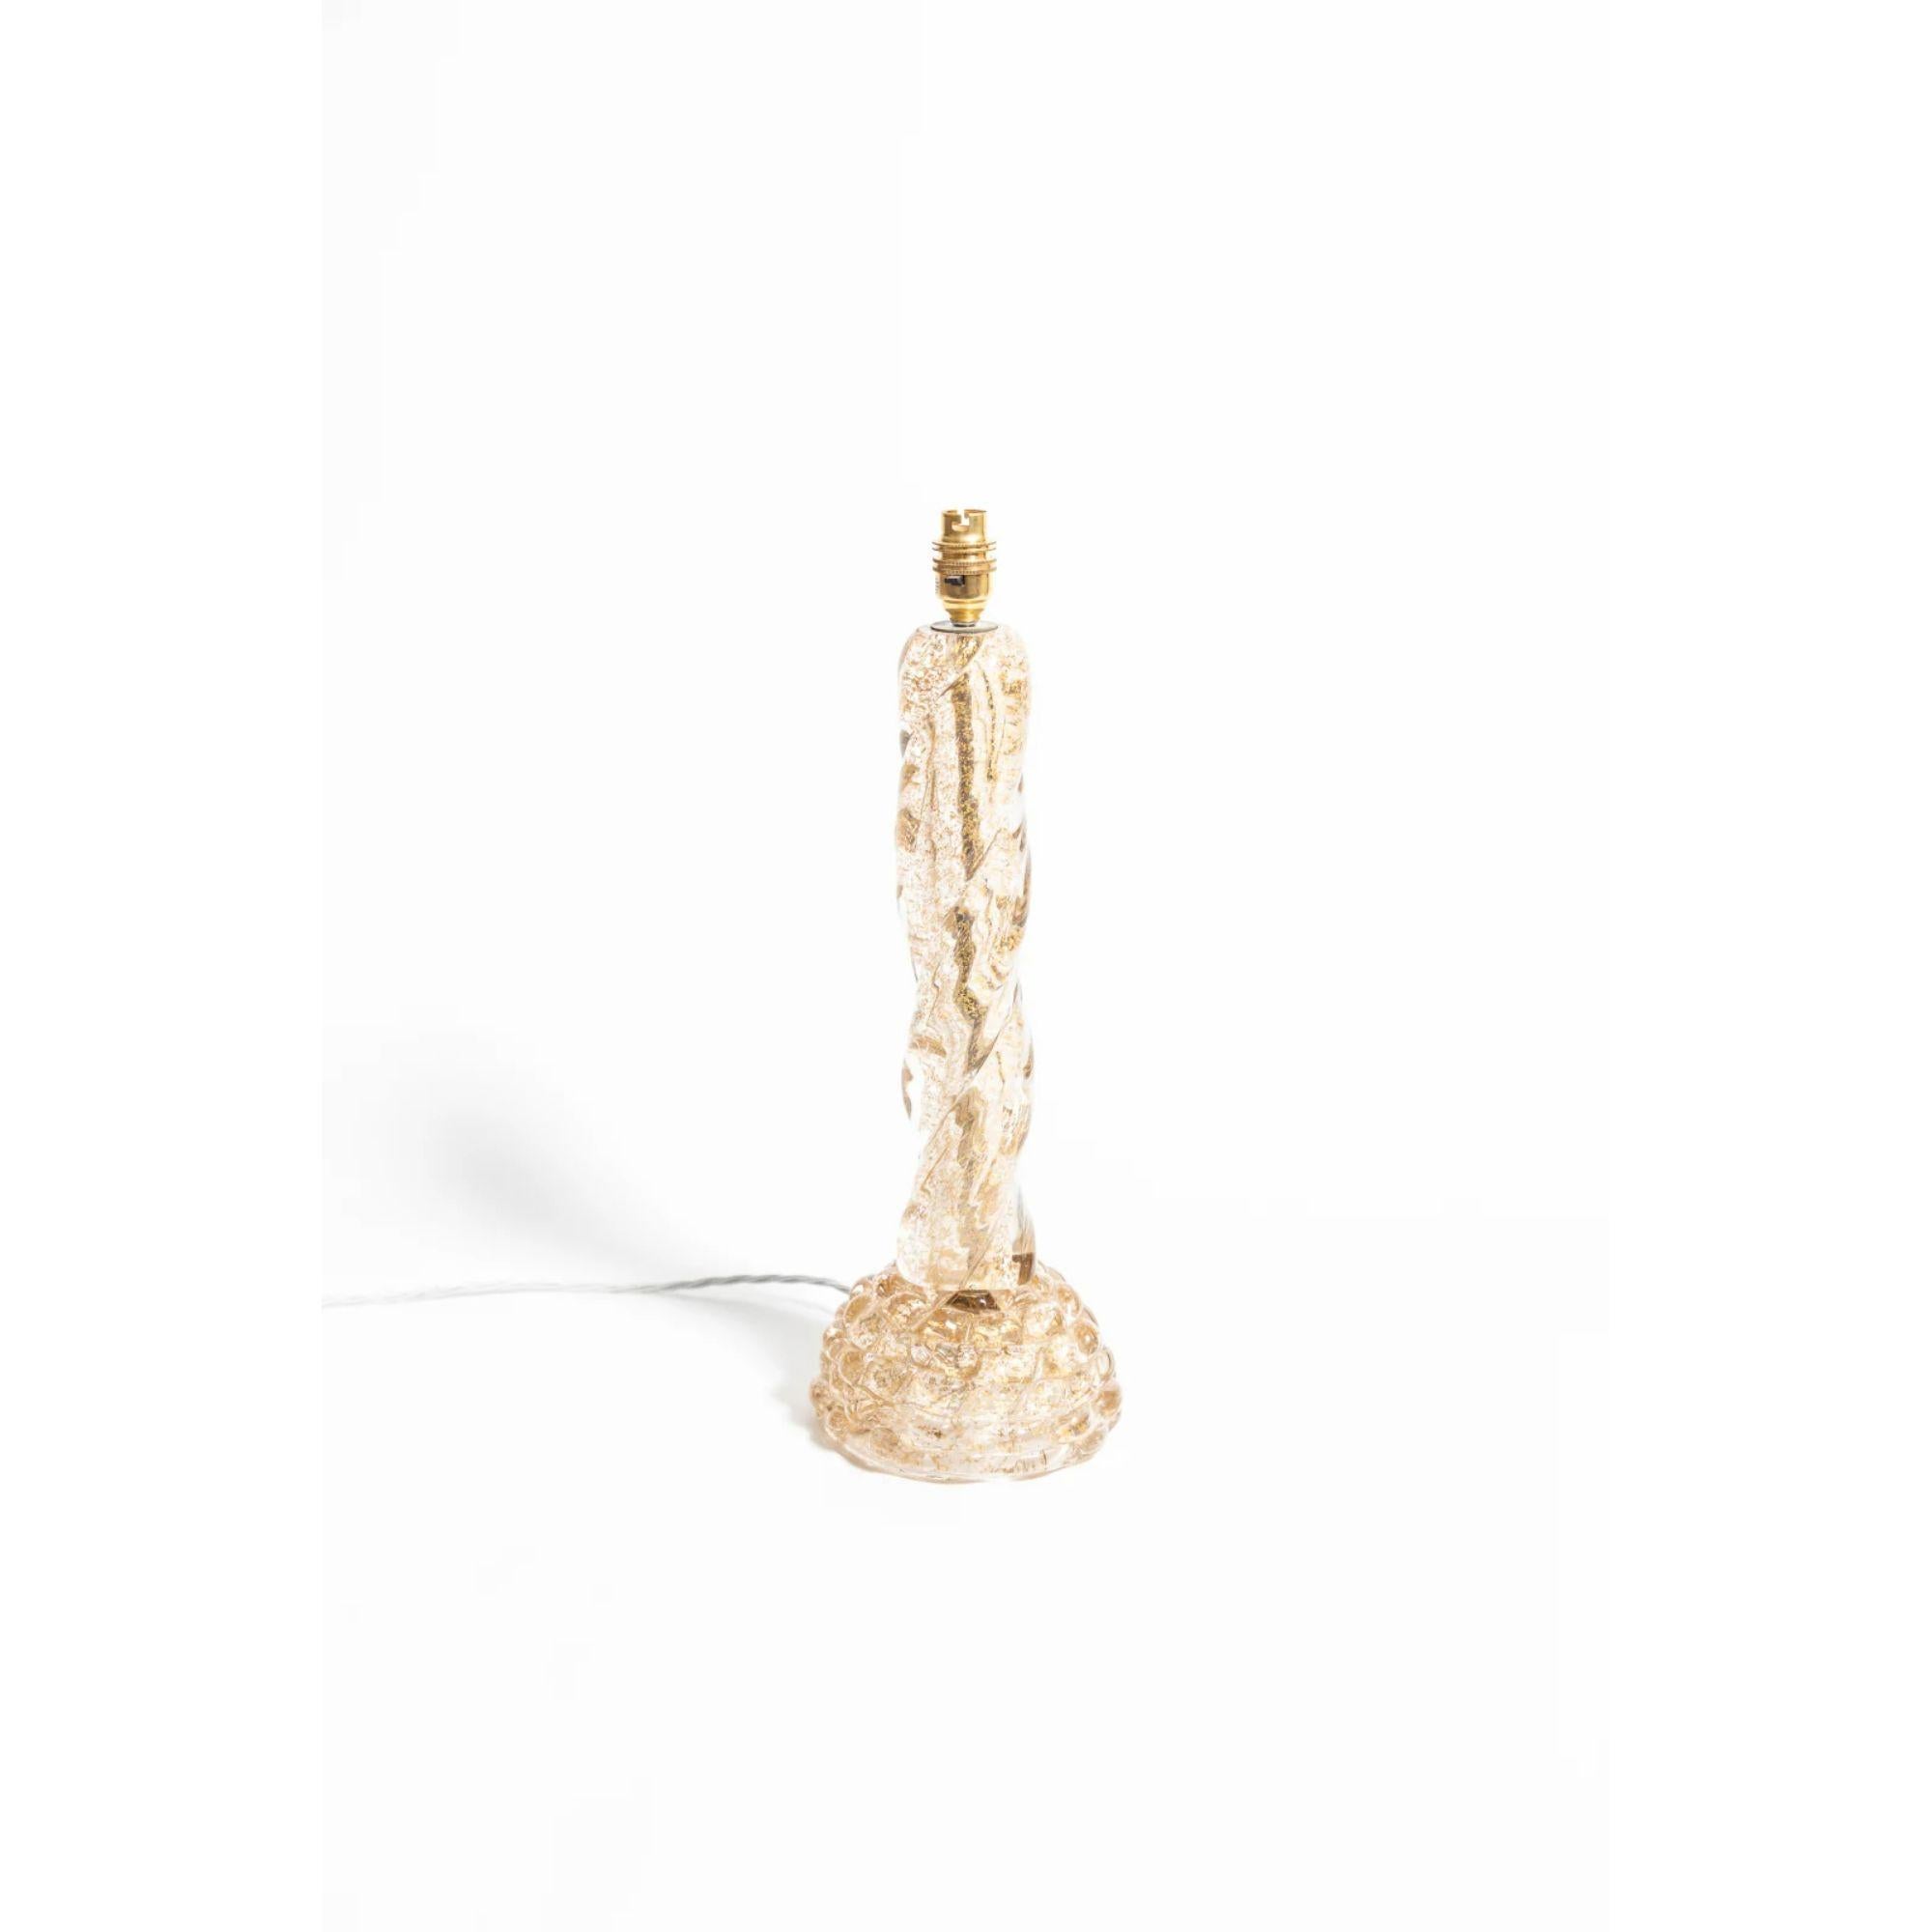 Lampe de table sculpturale en verre de Murano et feuille d'or par Ercol Barovier, années 1940.

Ercol Barovier a entamé sa transition esthétique personnelle vers le modernisme dans les années 1930 avec sa série de vases Primavera - des verres